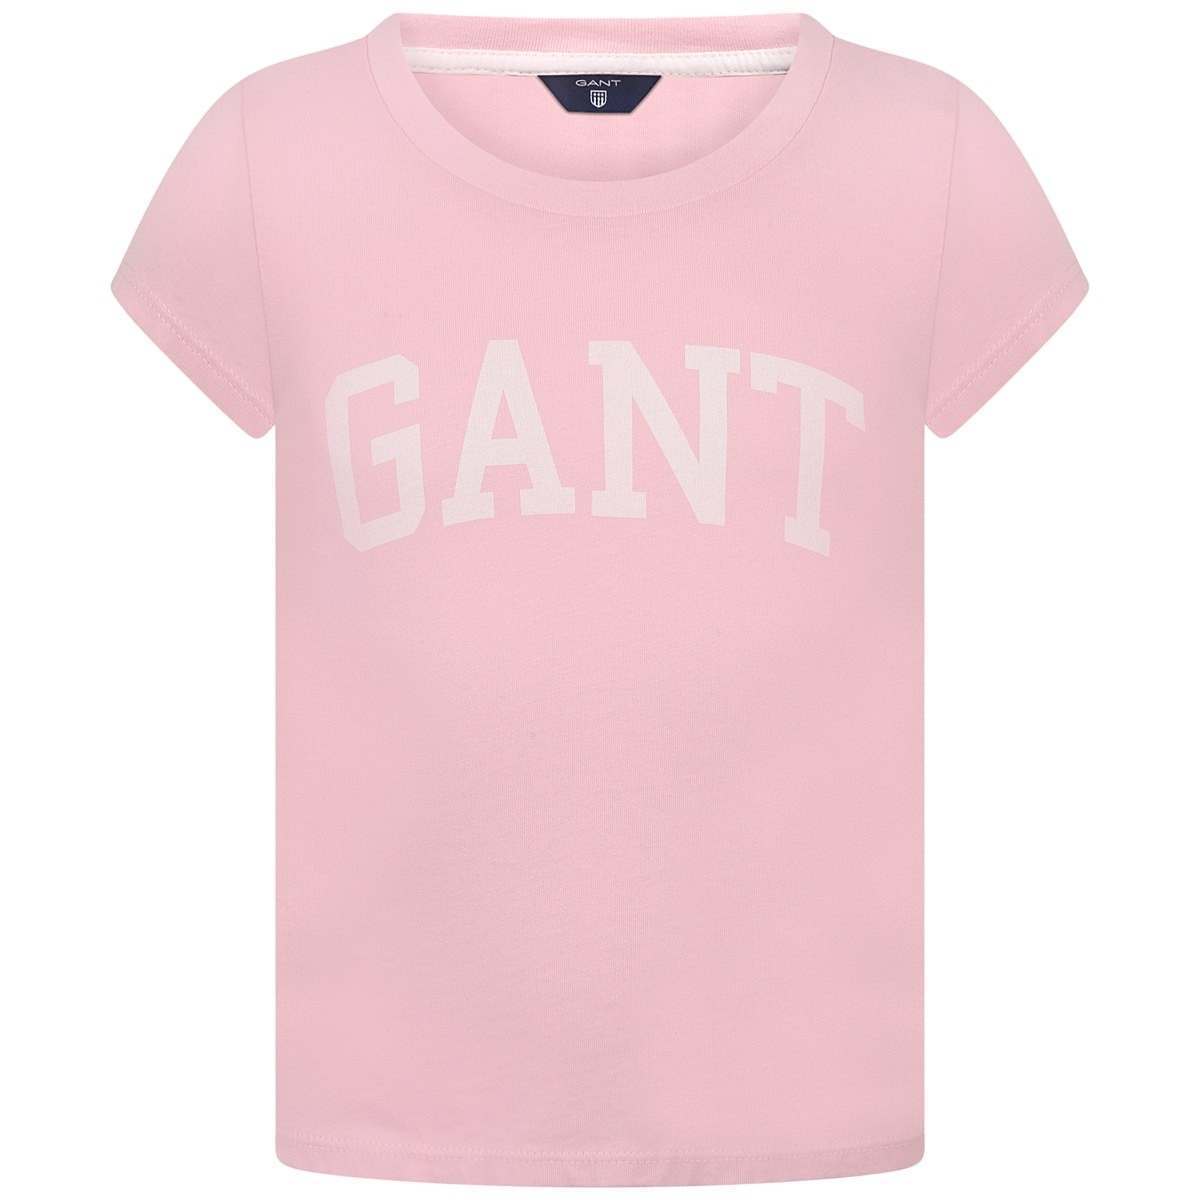 Top Pink Logo - Gant Girls Pink Logo Print Top